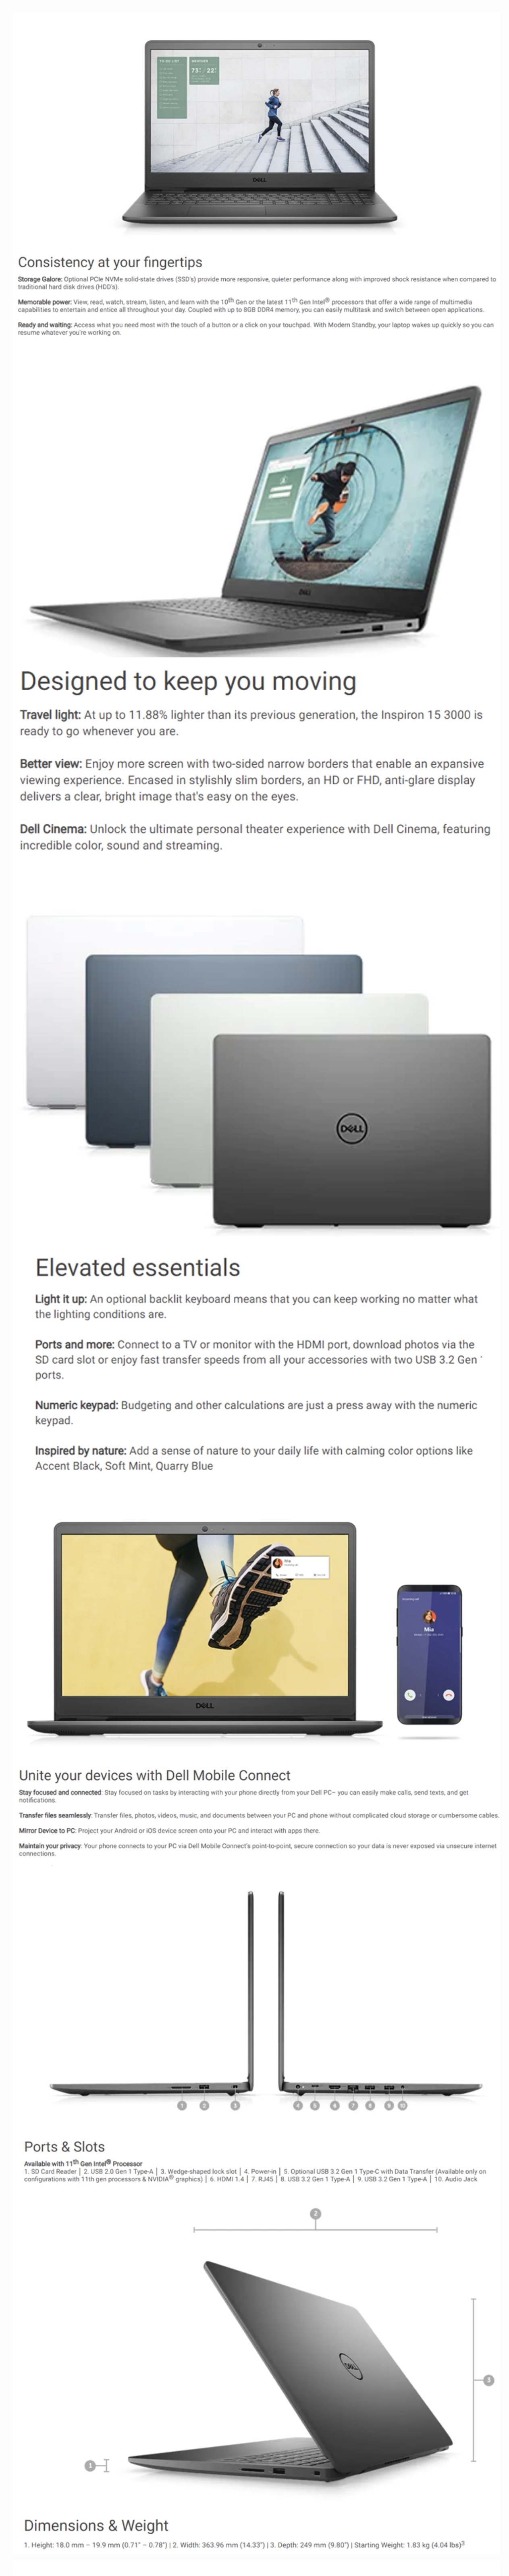 Dell-Inspiron-3501-Laptop-Soft-Mint-Description-1